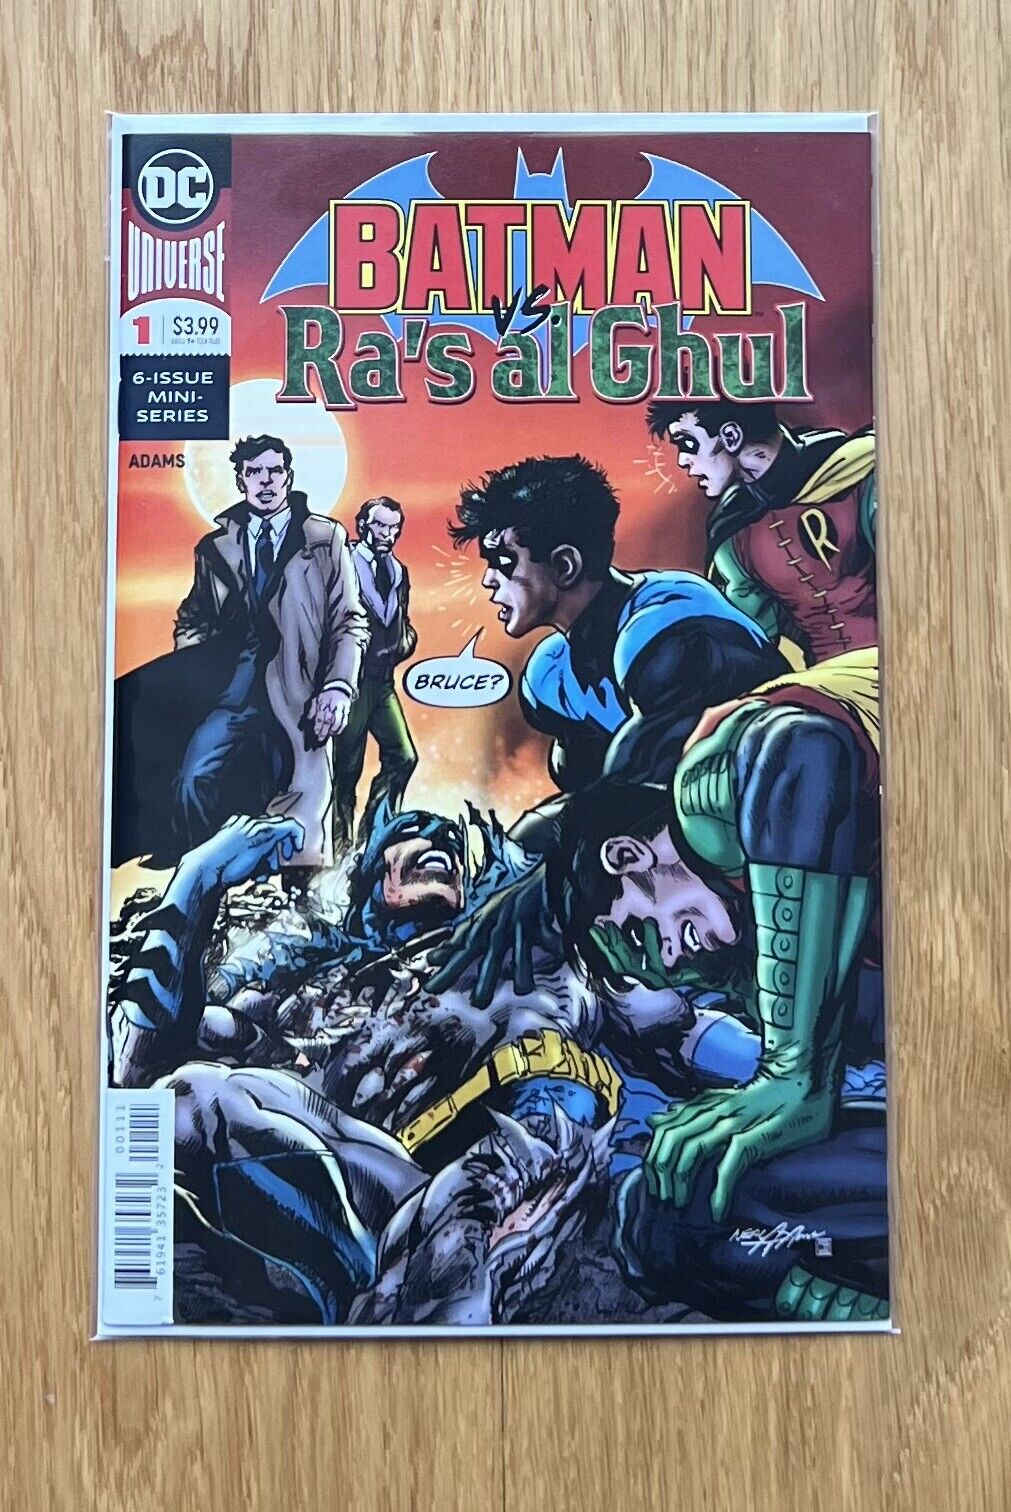 Batman vs Ra's Al Ghul #1 2019 Neal Adams Story and Art